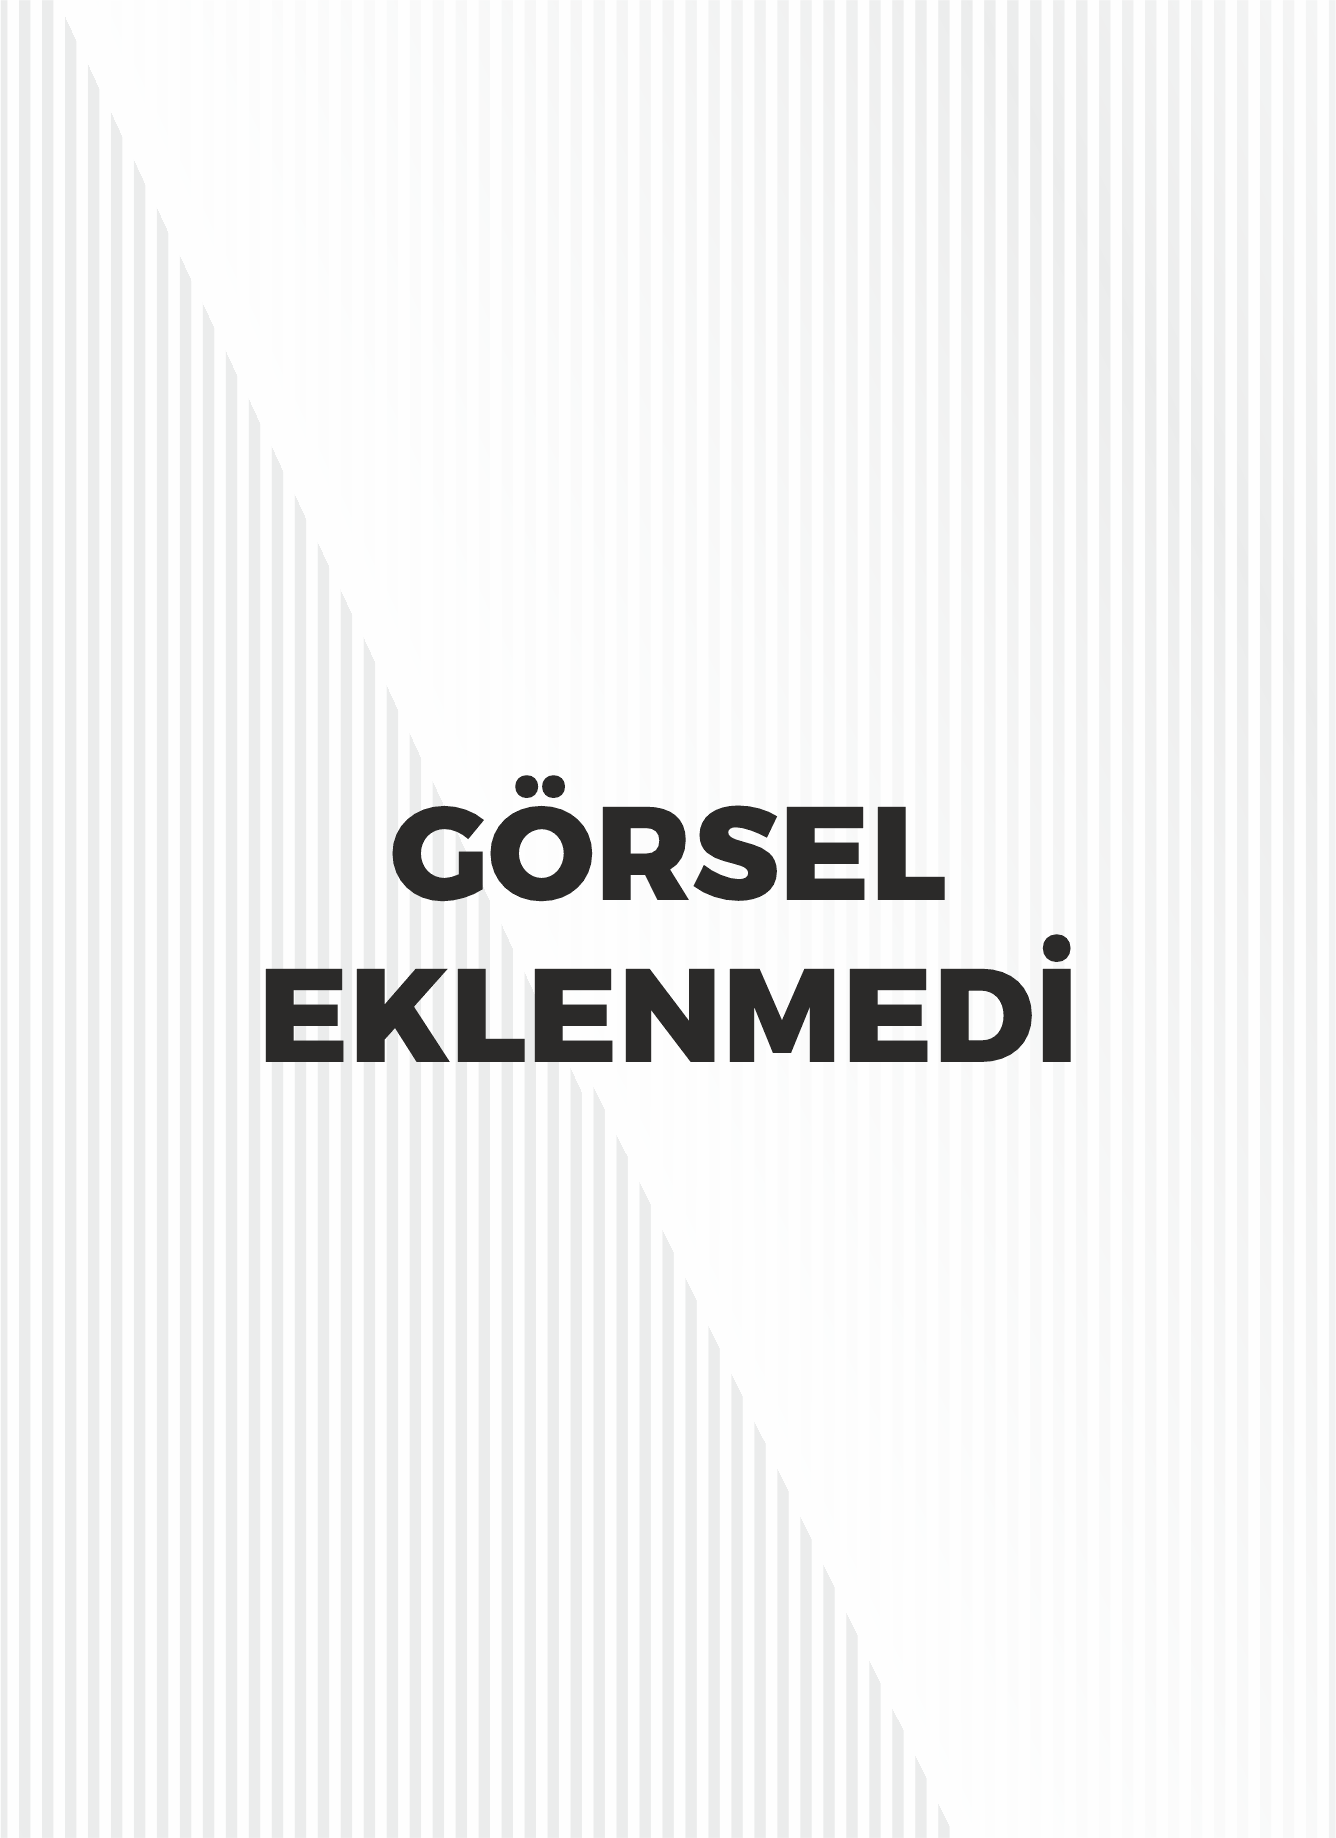 Doğu Karadeniz efsanelerini derleme ve araştırma (Trabzon, Rize ve Artvin efsaneleri) / Eastren Karadeniz legends